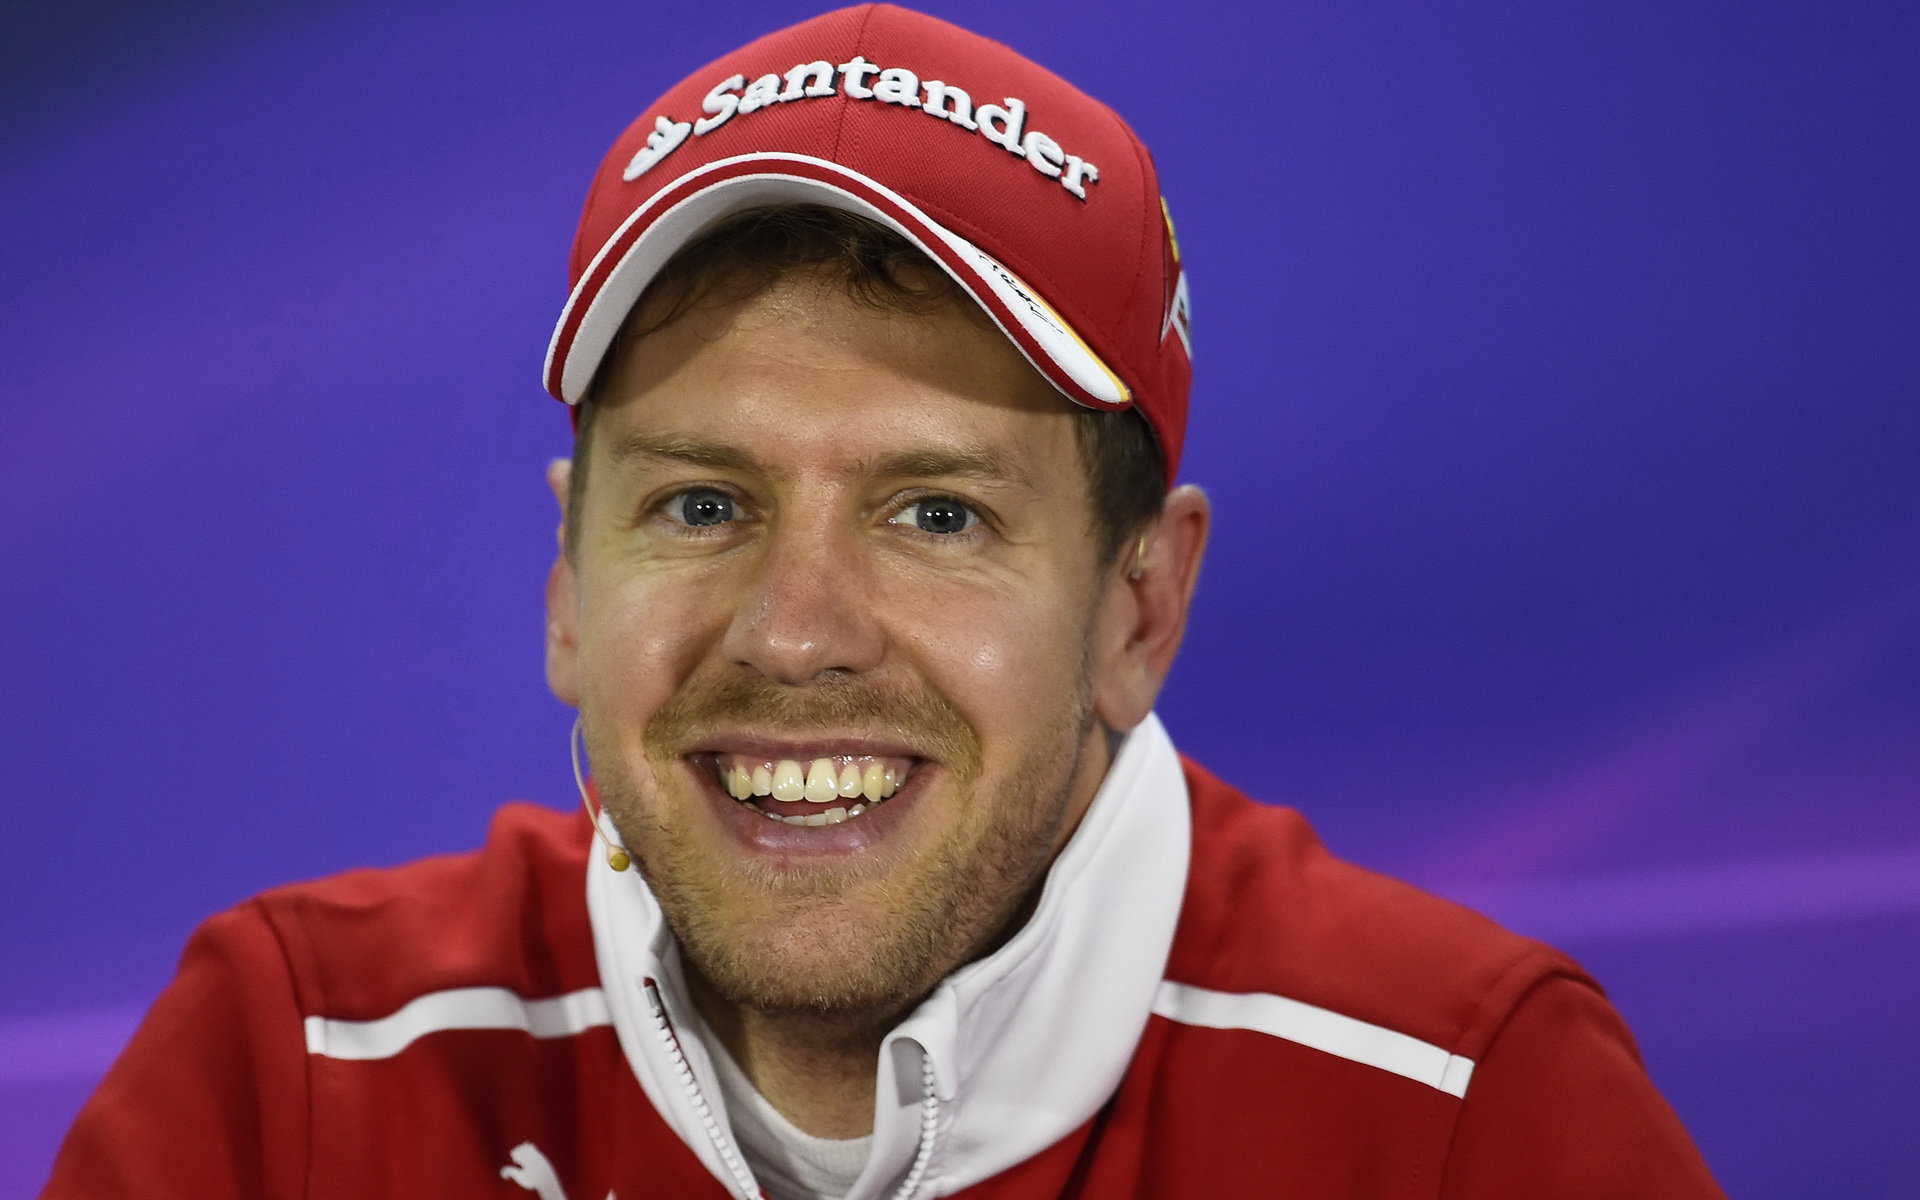 Sebastian Vettel odkrývá své soukromí. Ale jen tam, kam on chce